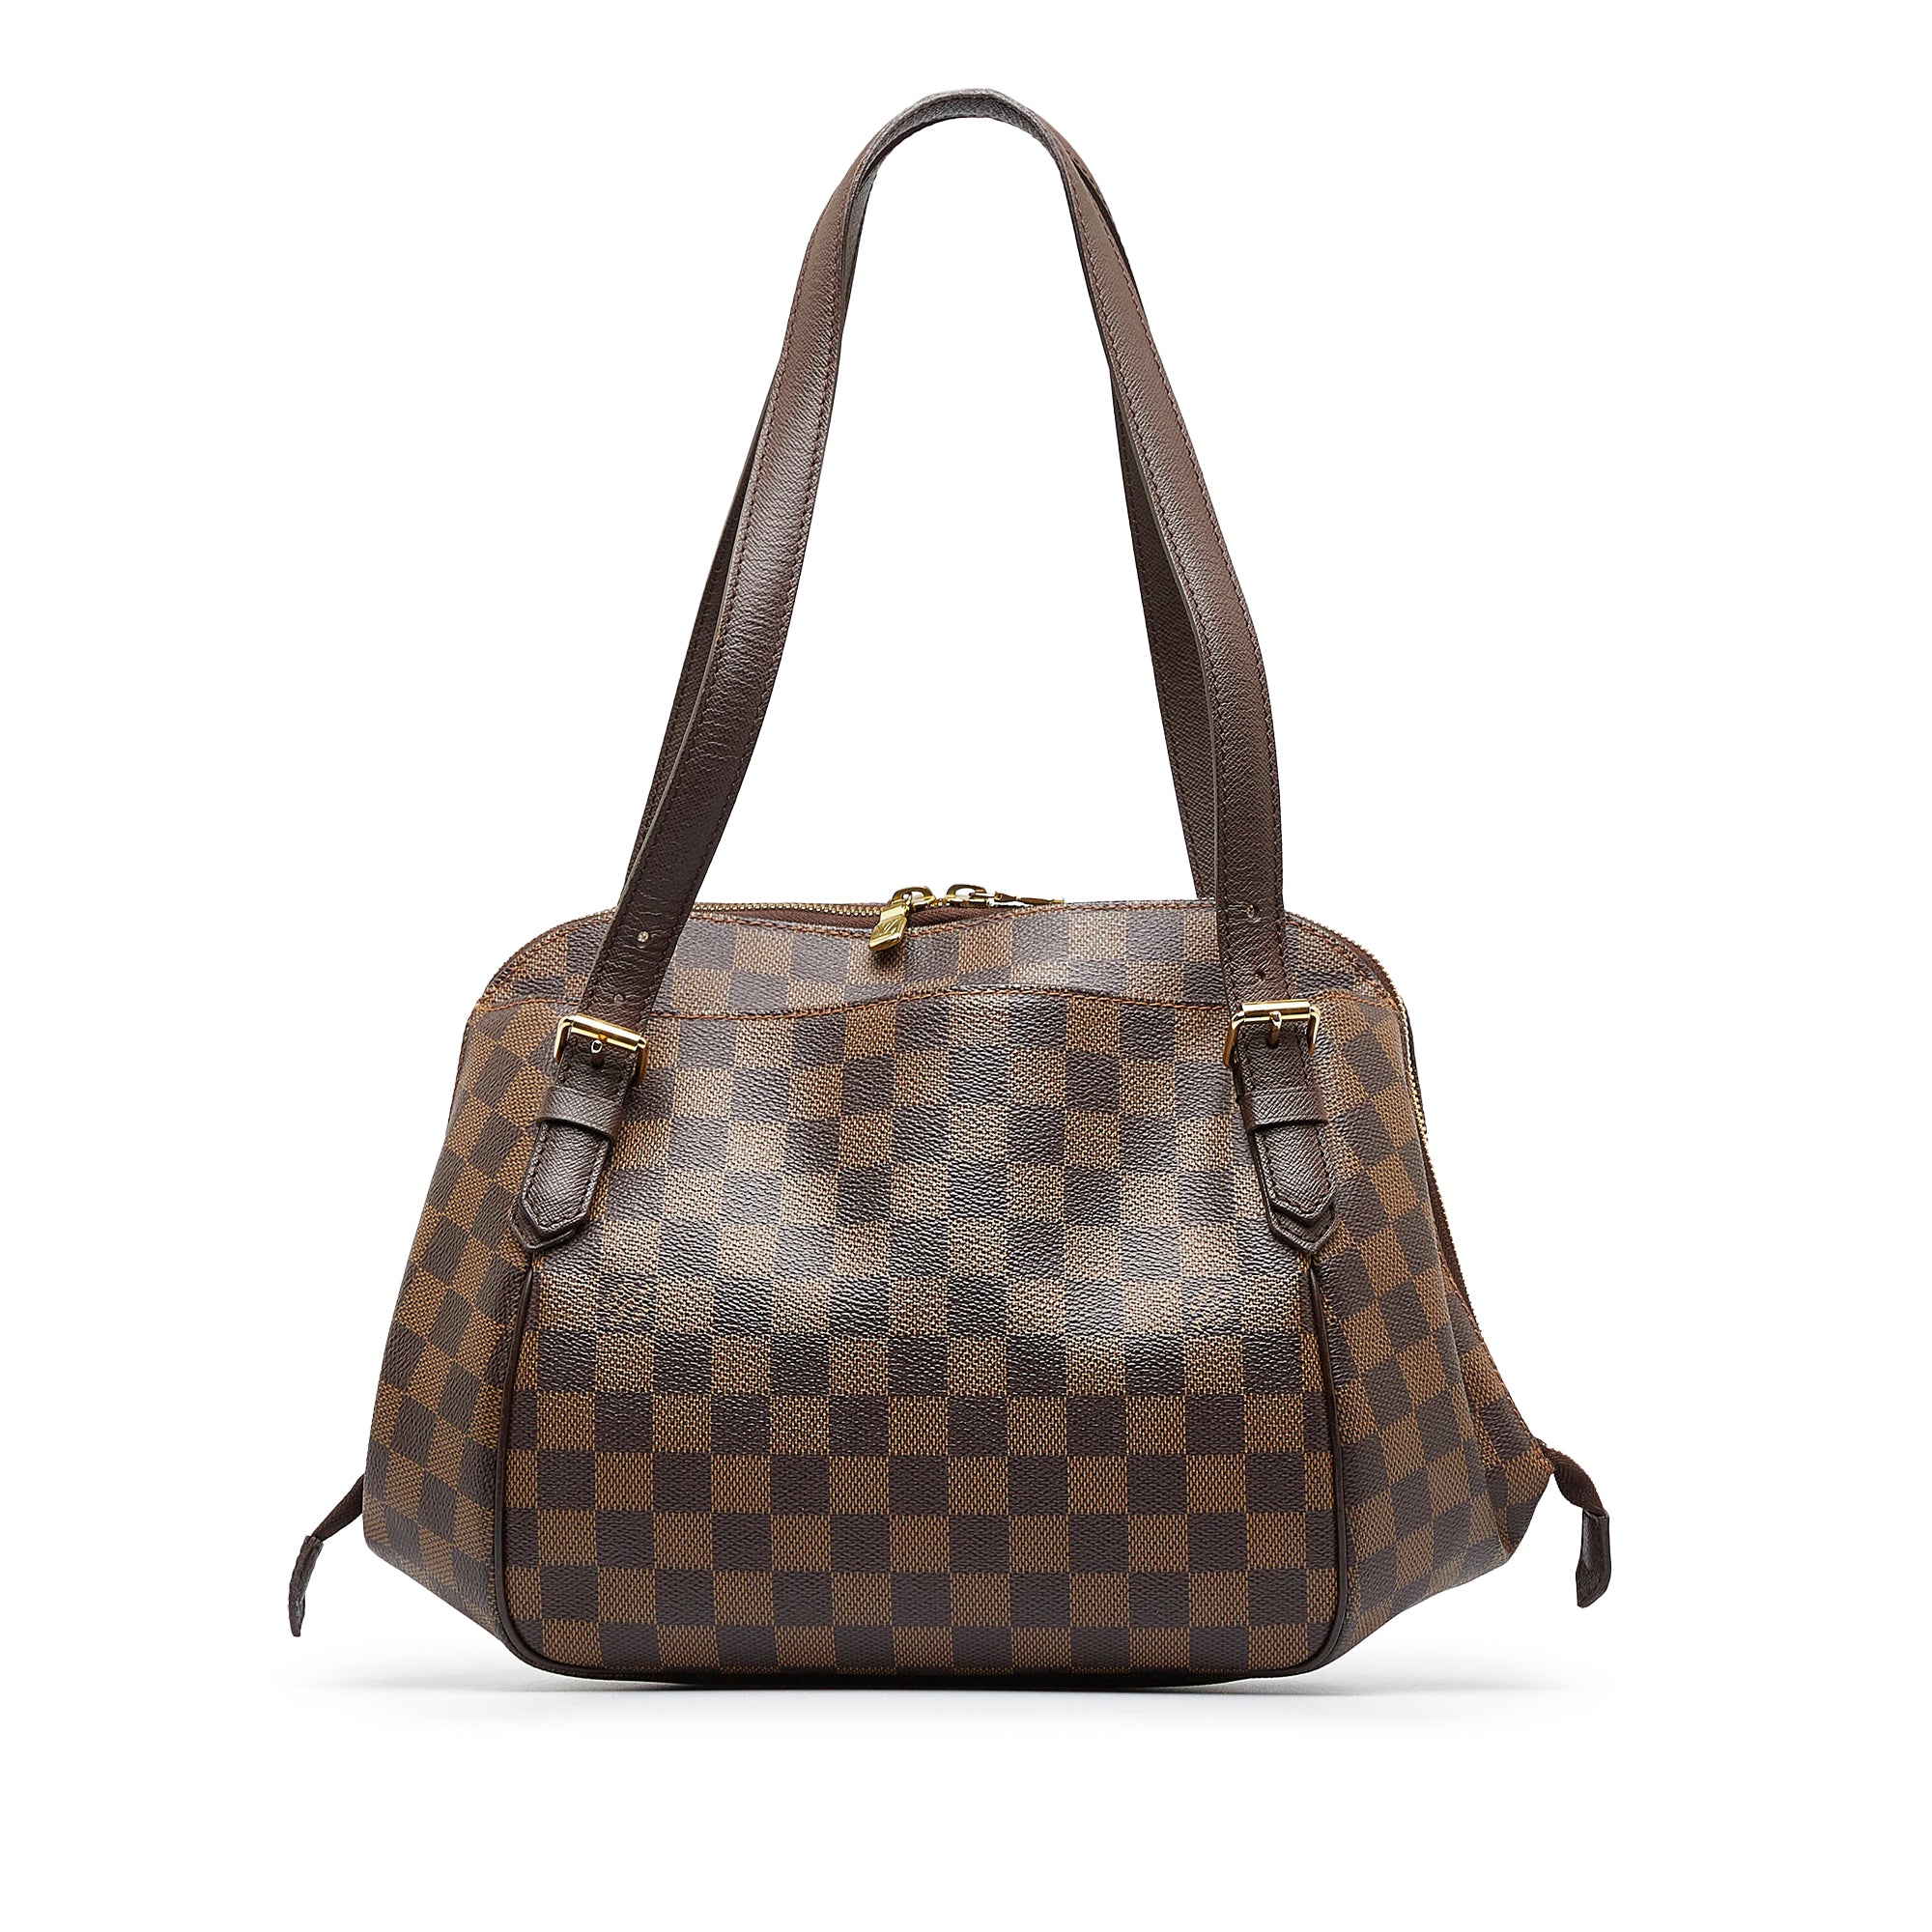 Louis Vuitton Belem MM Handbag in Damier Ebene - Pristine Condition